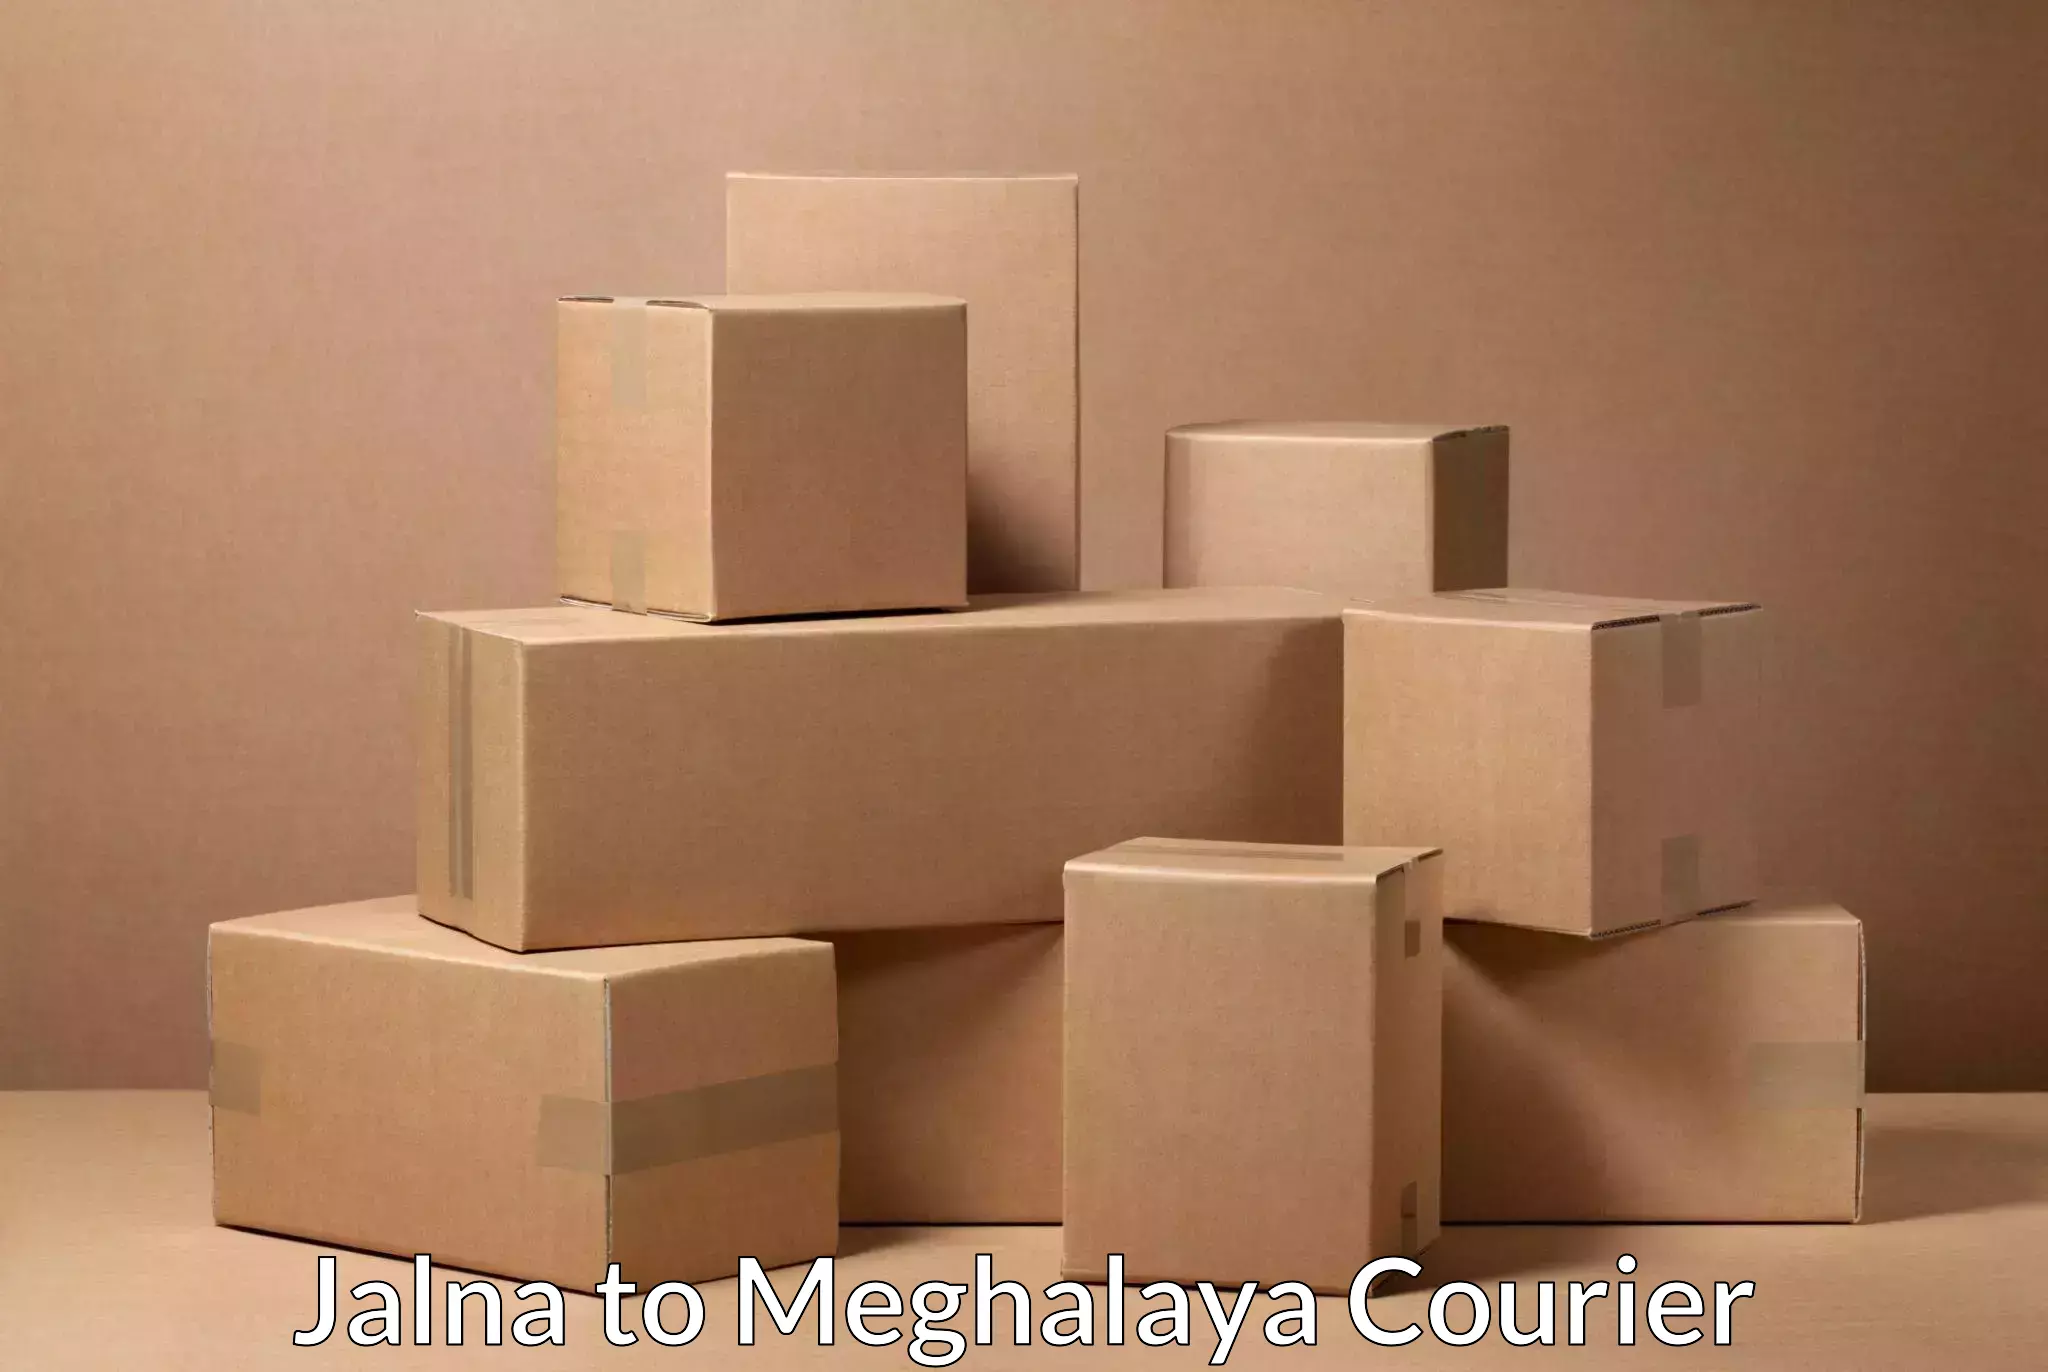 Cargo courier service Jalna to Meghalaya